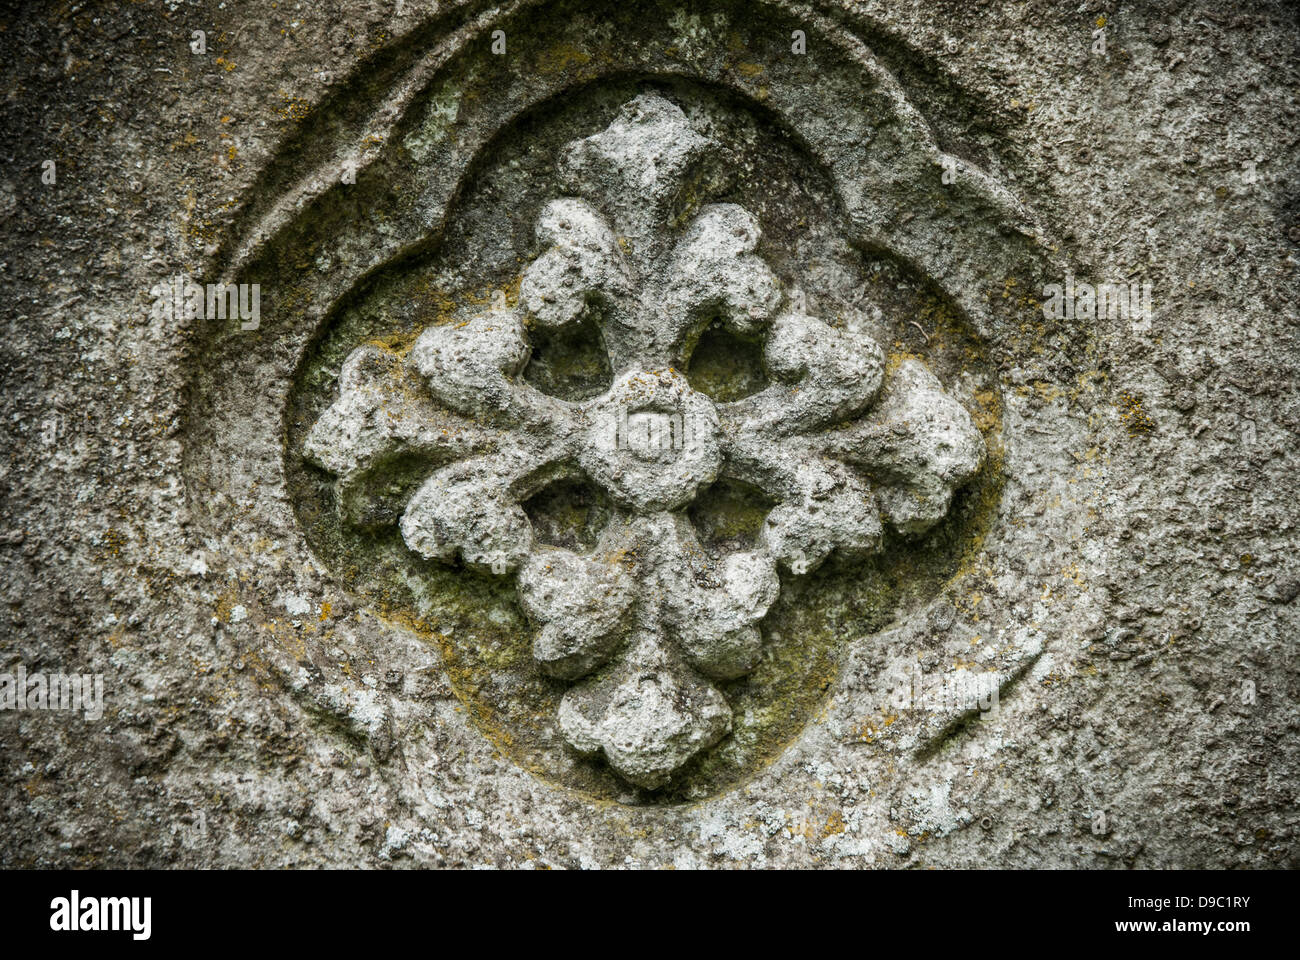 Motivo floral tallado en piedra caliza. Foto de stock